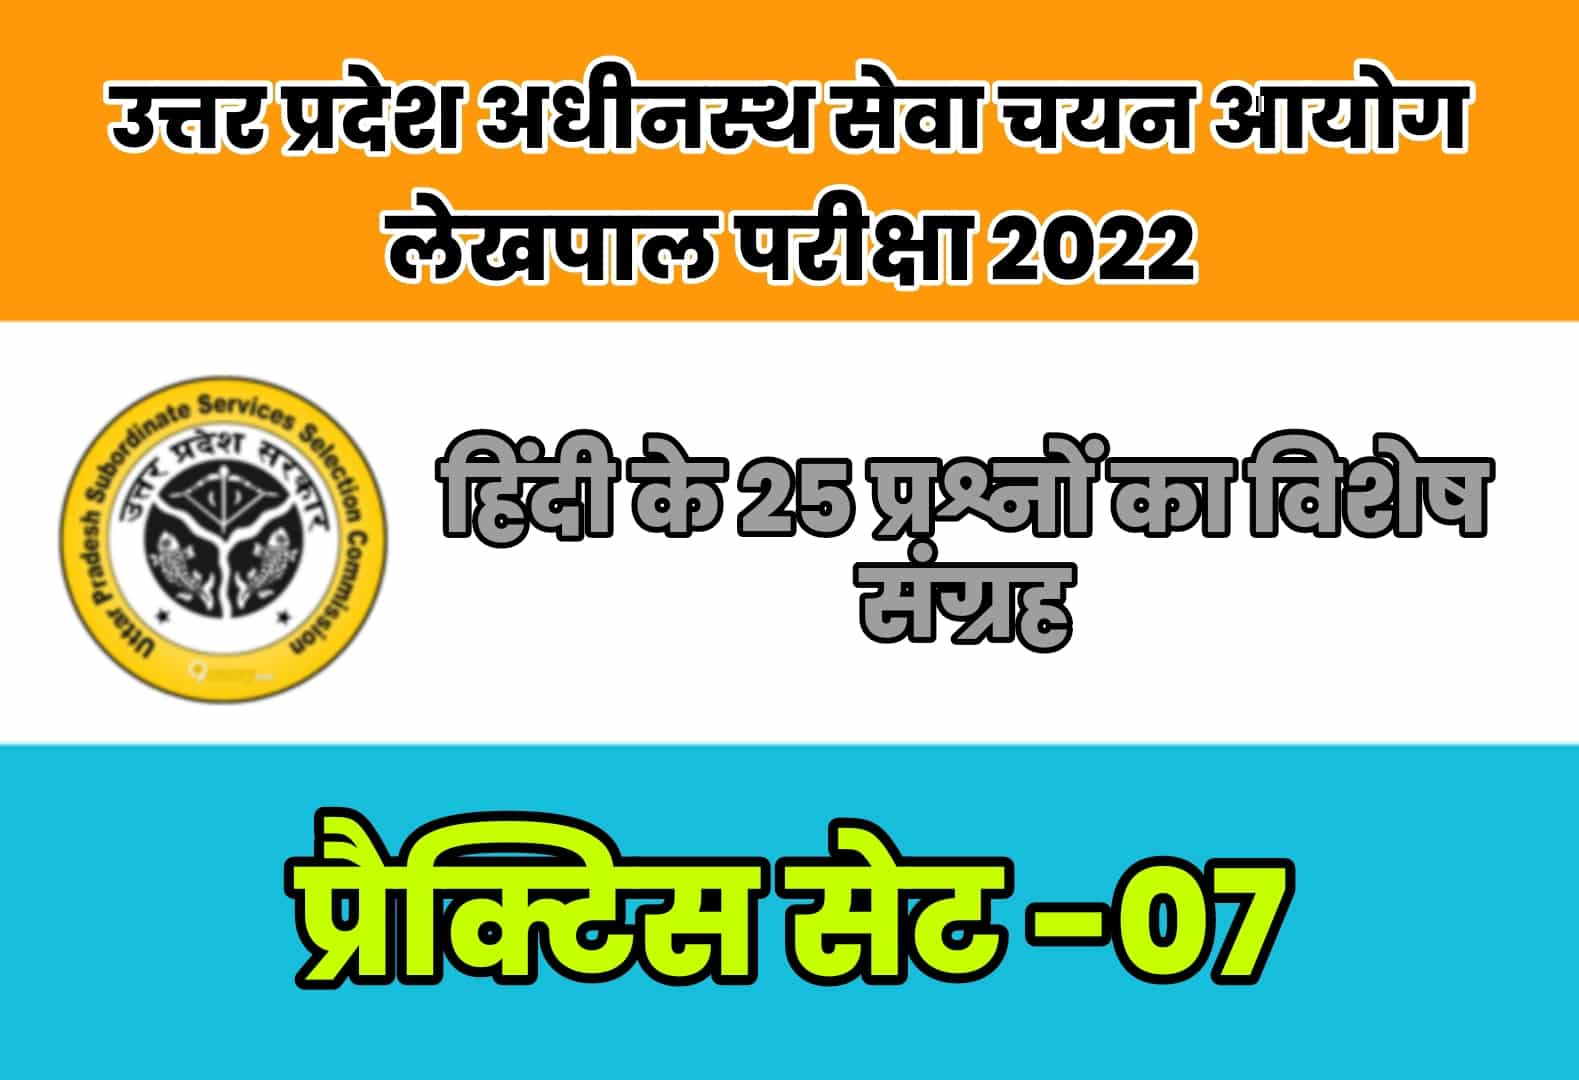 UP Lekhpal Exam 2022 प्रैक्टिस सेट 07 : विगत परीक्षाओं में पूछे गए हिंदी के 25 महत्वपूर्ण प्रश्नों का संग्रह, अवश्य देखें